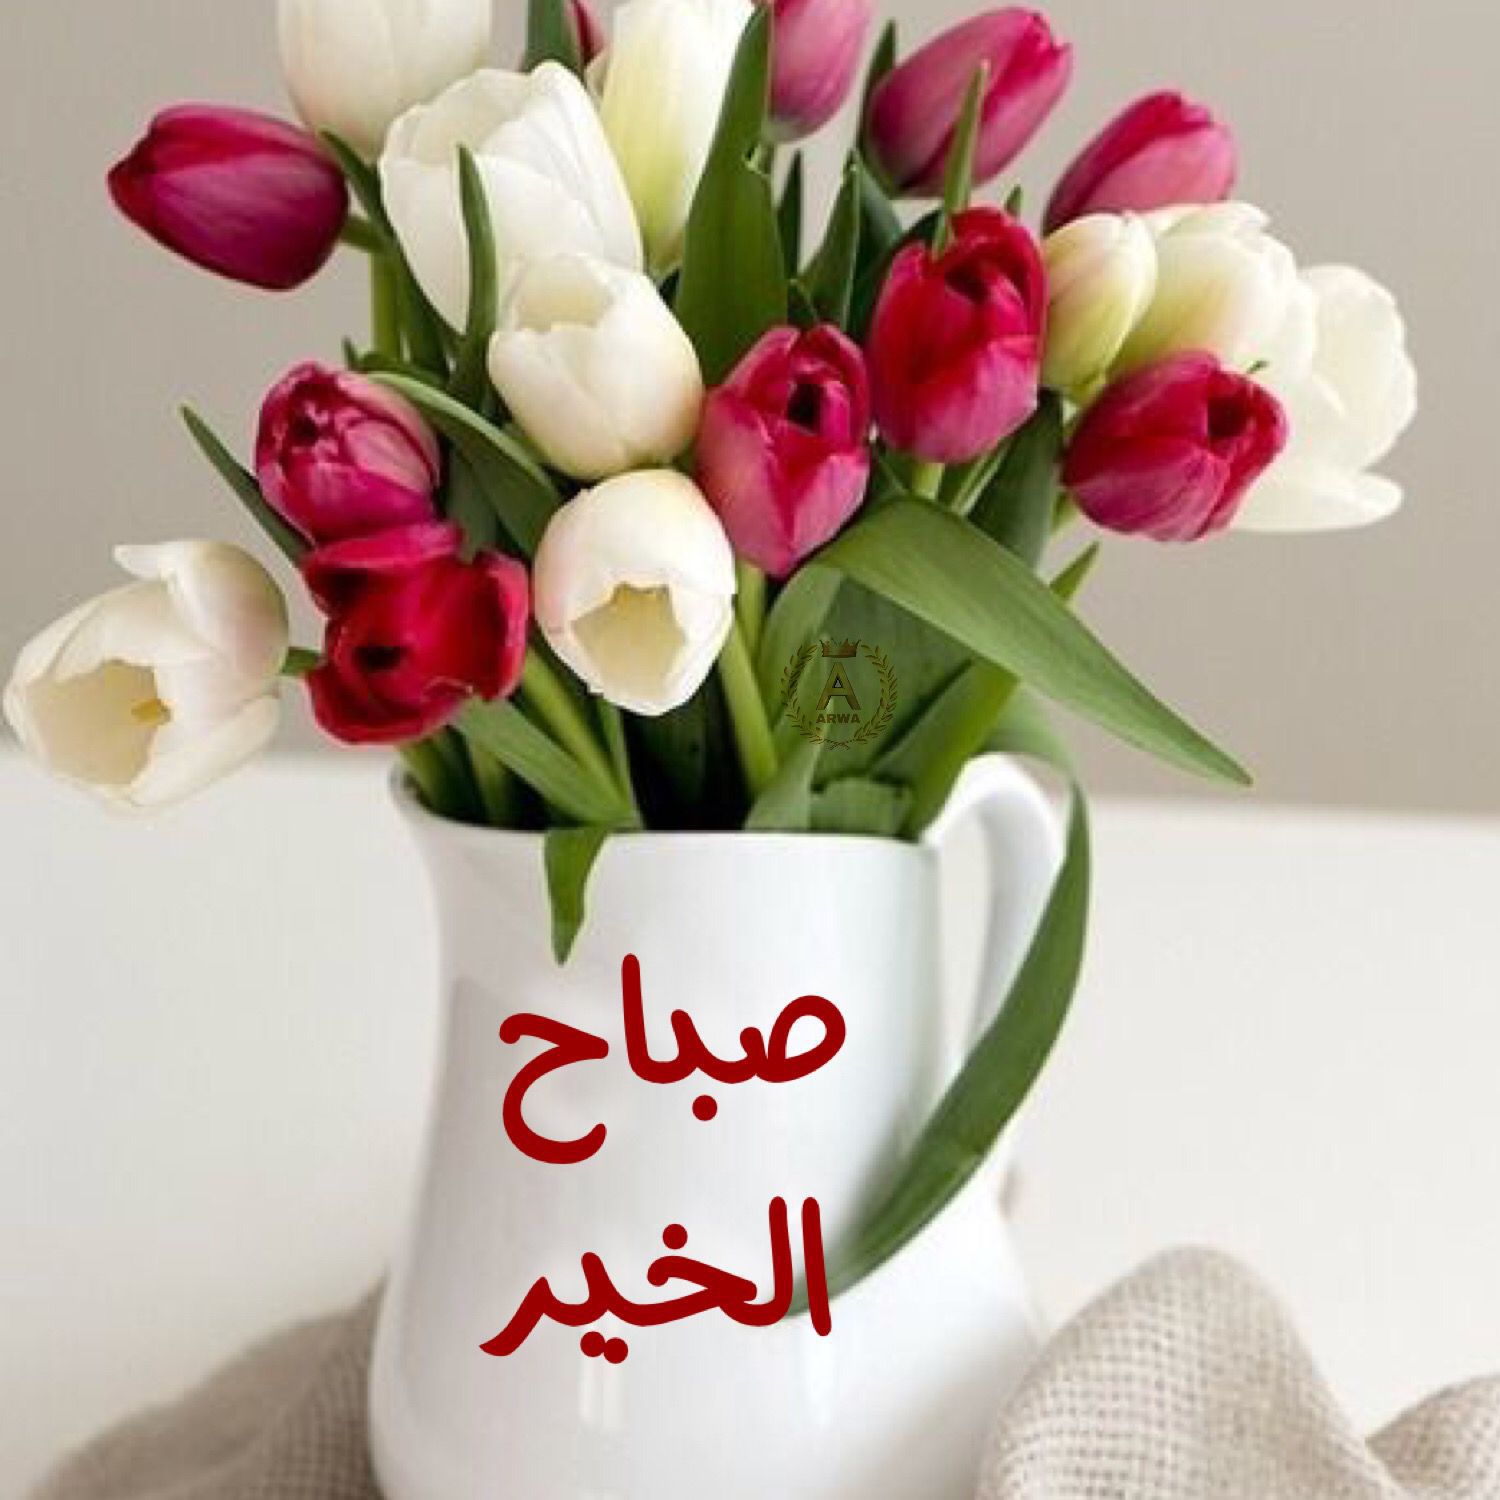 صور صباح الورد واجمل رسائل صباحية مكتوبة موقع مصري